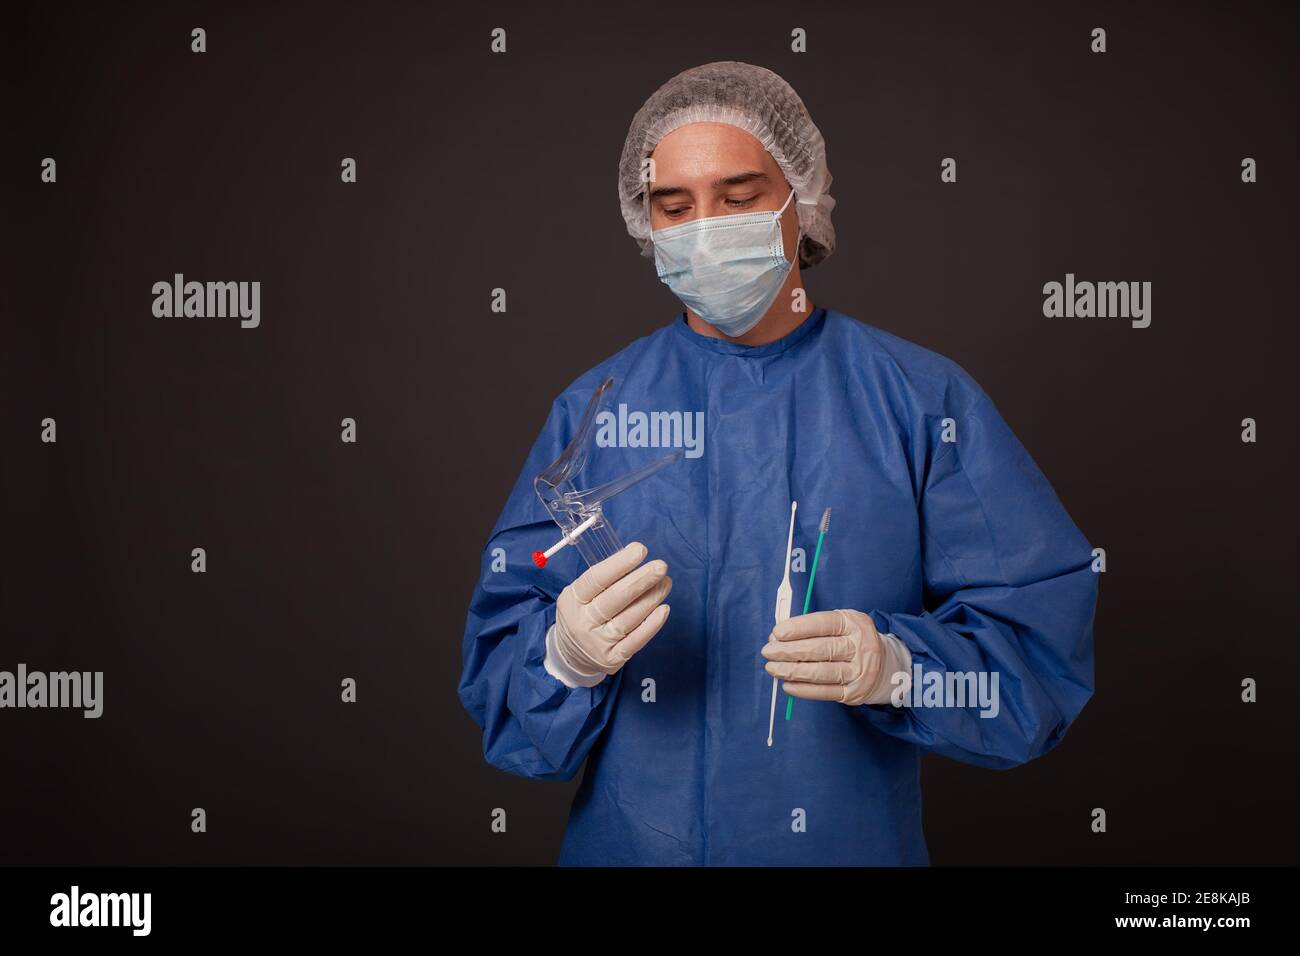 Ein Gynäkologe mit einem venusspiegel in den Händen. Gynäkologisches  Zubehör, Pinsel, Stick. Ein Arzt in einer medizinischen Maske, eine Robe,  Handschuhe, ein Hut mit einem gyn Stockfotografie - Alamy